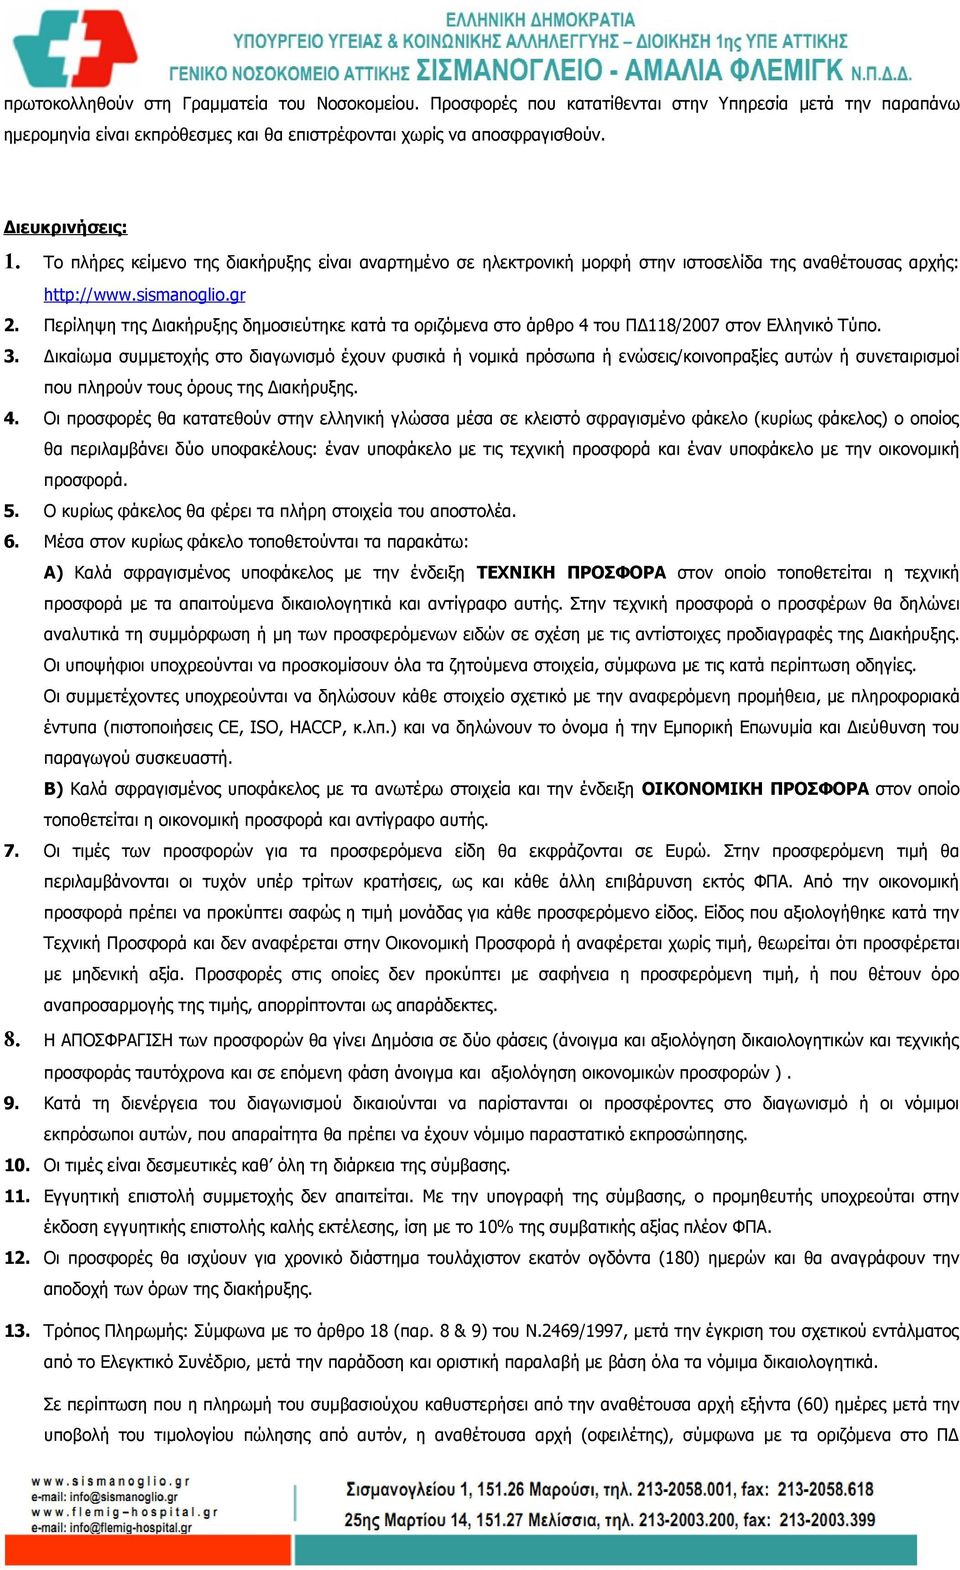 Περίληψη της Διακήρυξης δημοσιεύτηκε κατά τα οριζόμενα στο άρθρο 4 του ΠΔ118/2007 στον Ελληνικό Τύπο. 3.